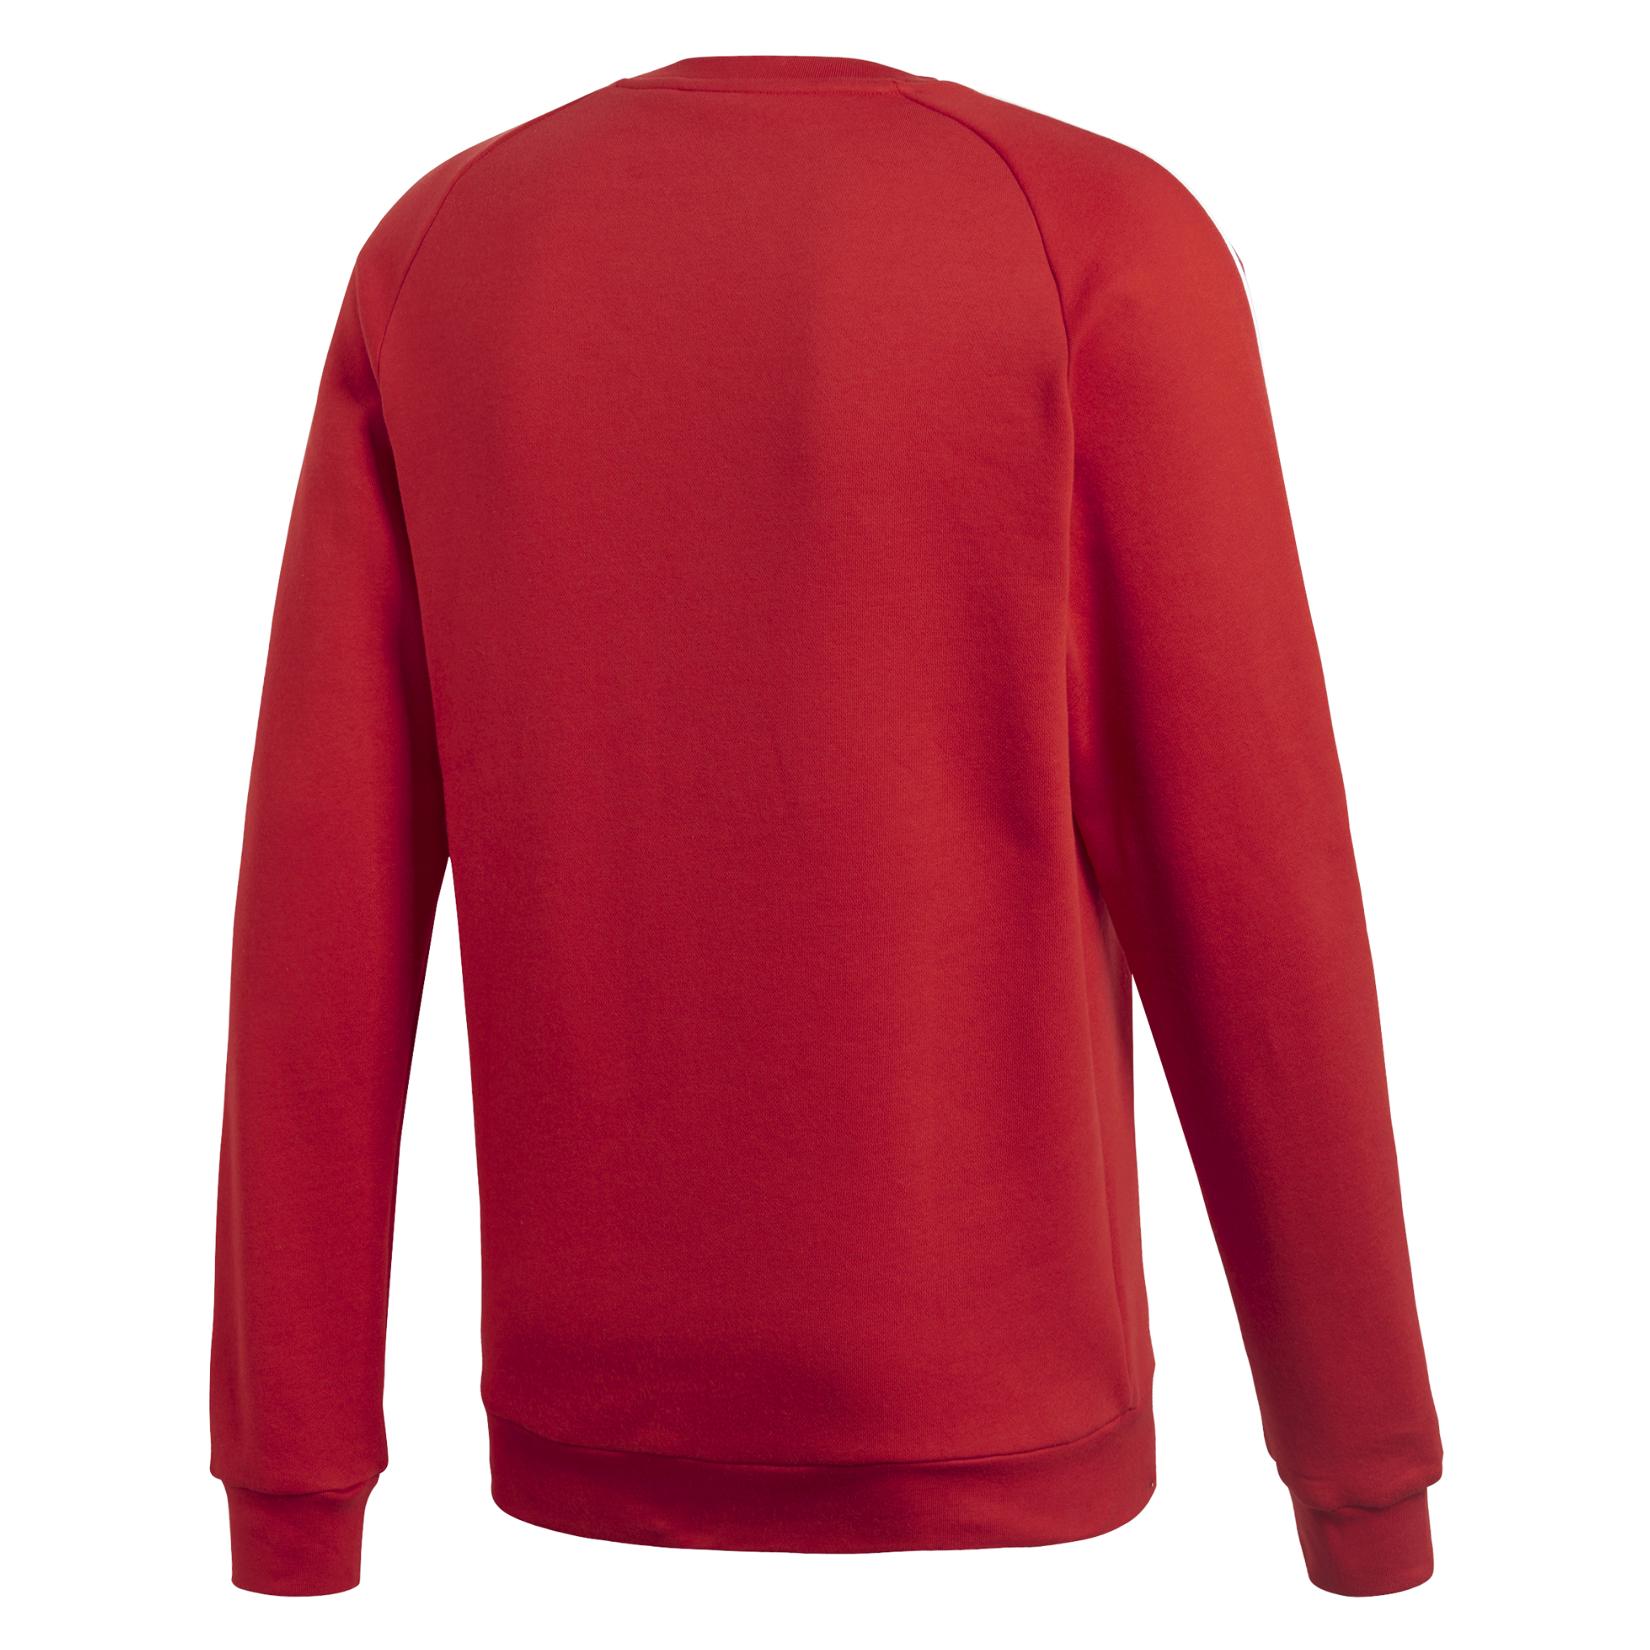 Adidas Core 18 Sweatshirt Power Red-White